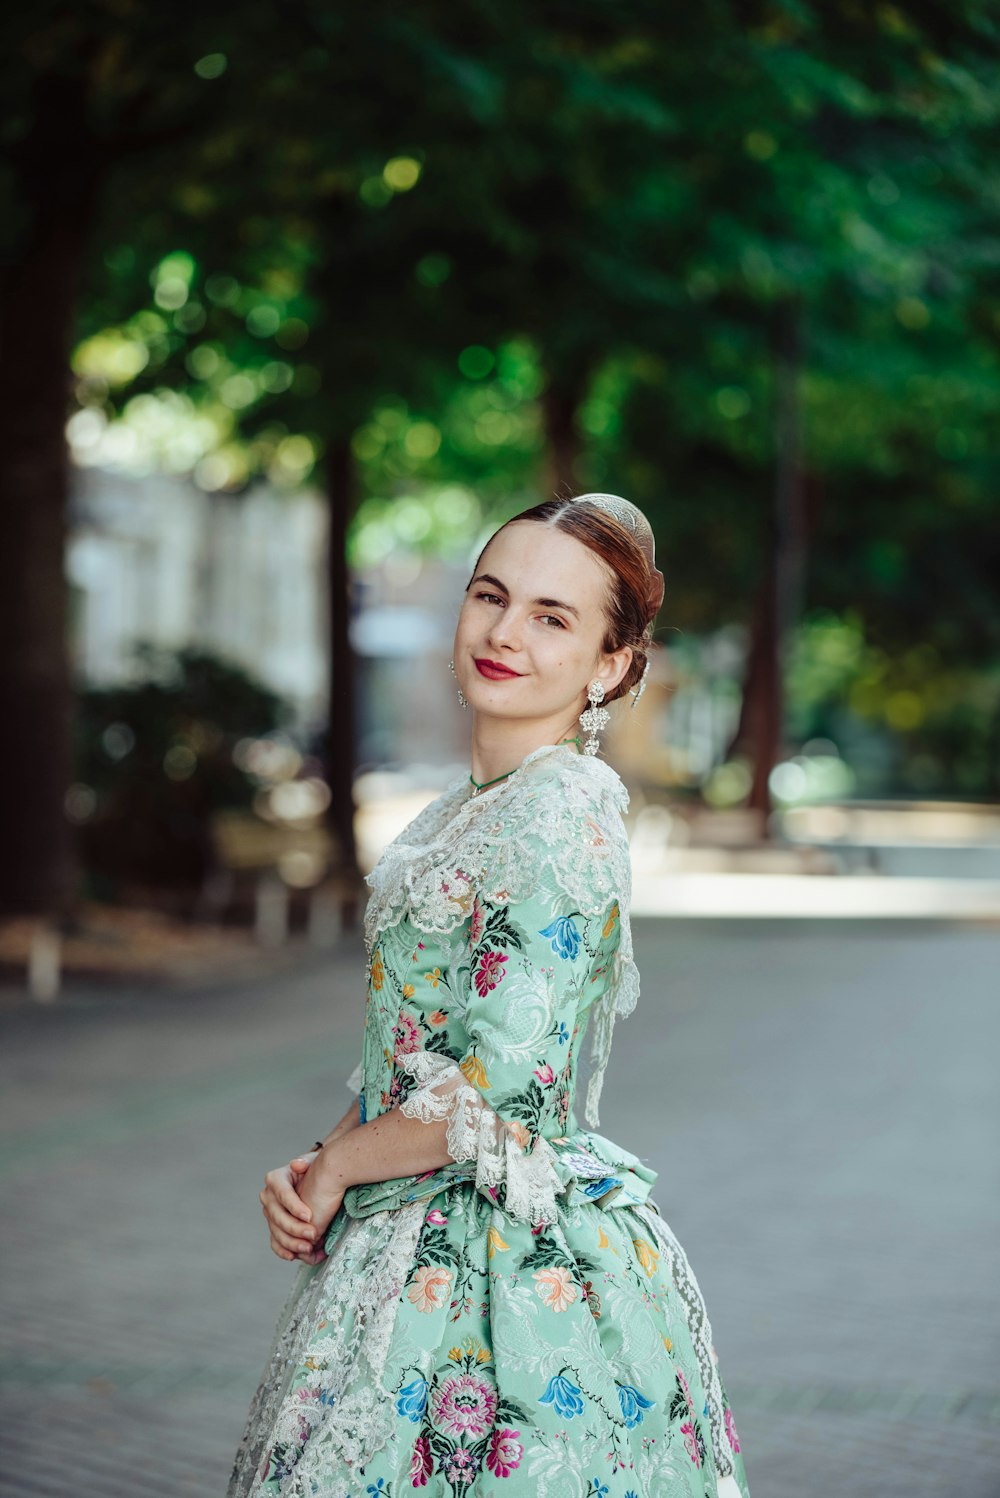 Una mujer con un vestido floral posa para una foto